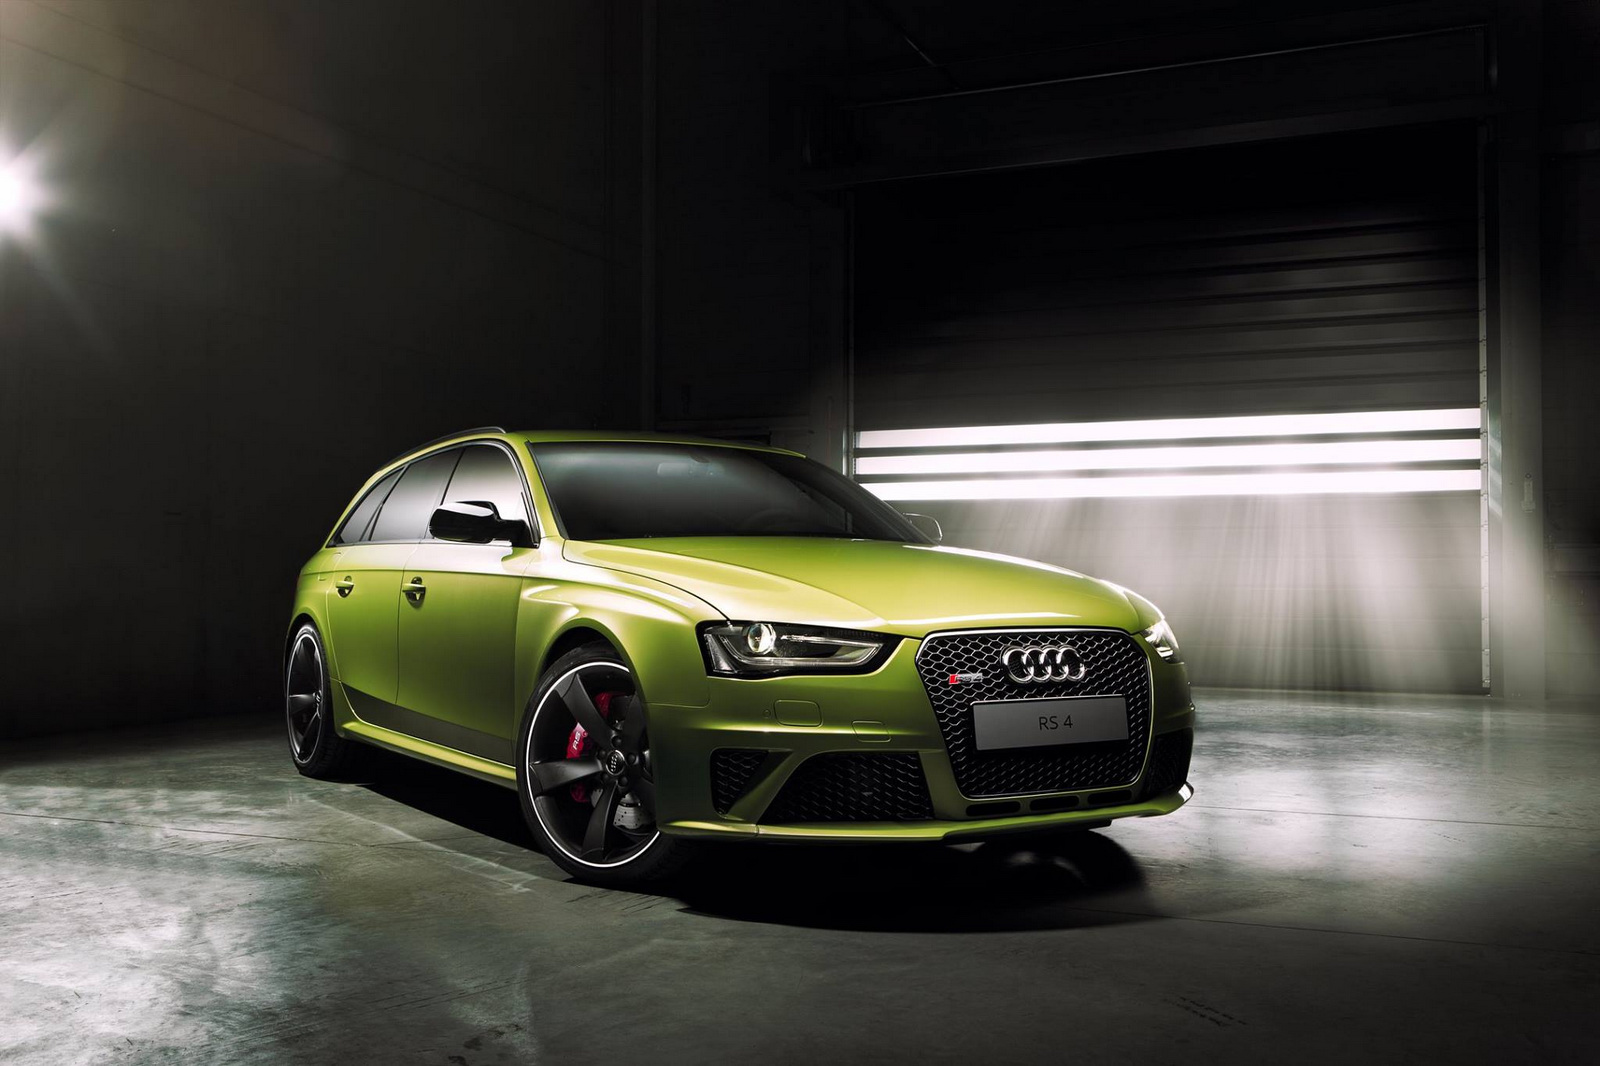 Audi giới thiệu xe thể thao RS4 Avant với động cơ V8 4.2L hút khí tự nhiên, công suất 444 mã lực